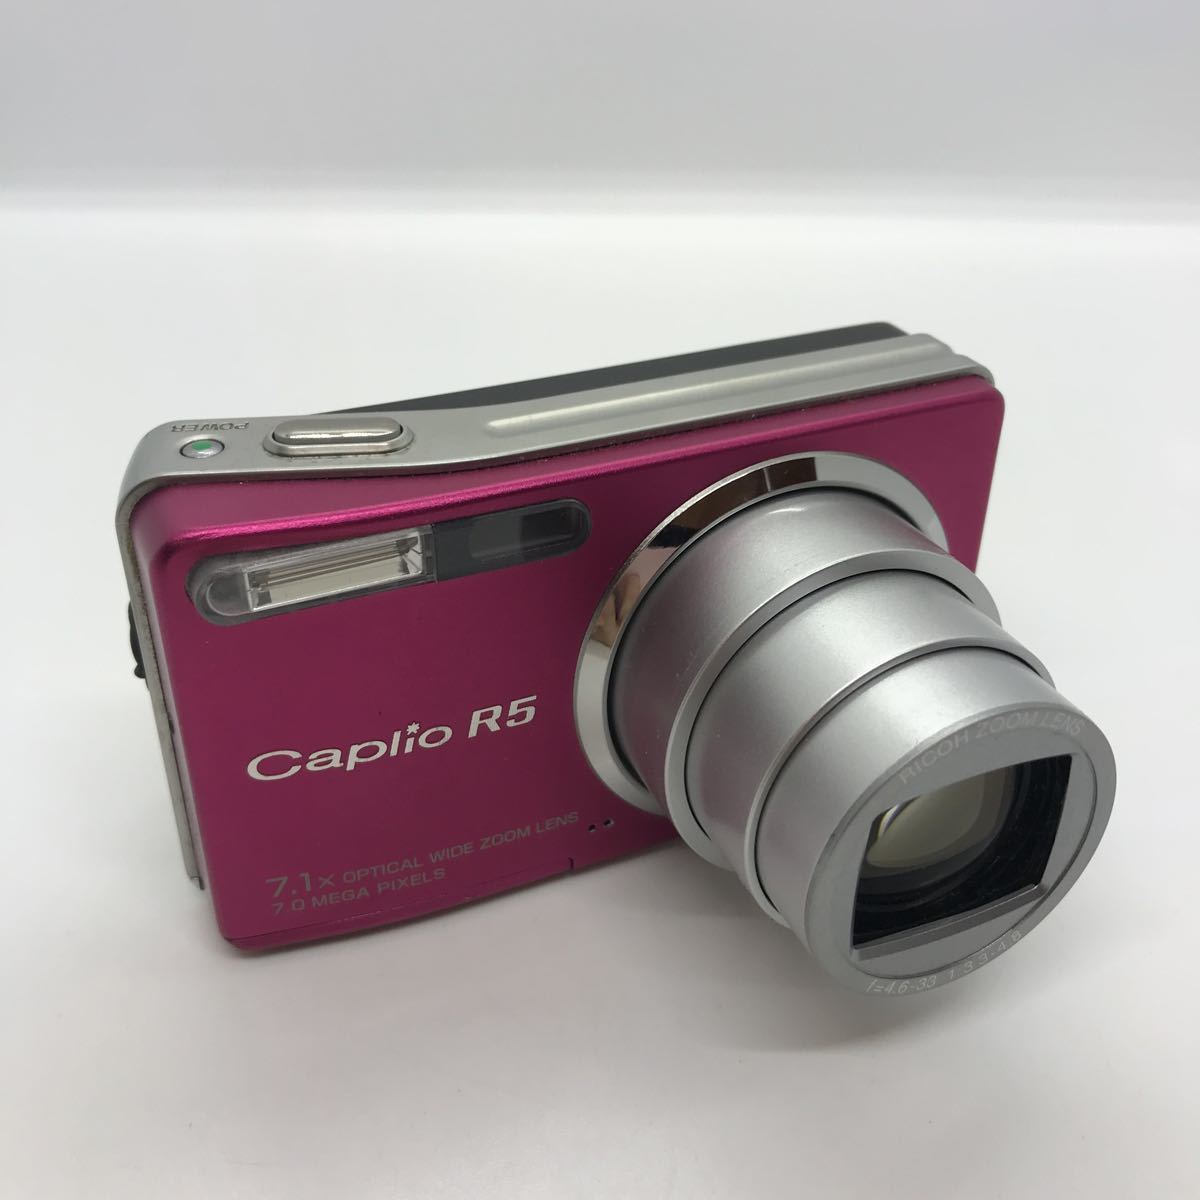 概ね美品 RICOH Caplio R5 デジタルカメラ デジカメ c16b256tn_画像1